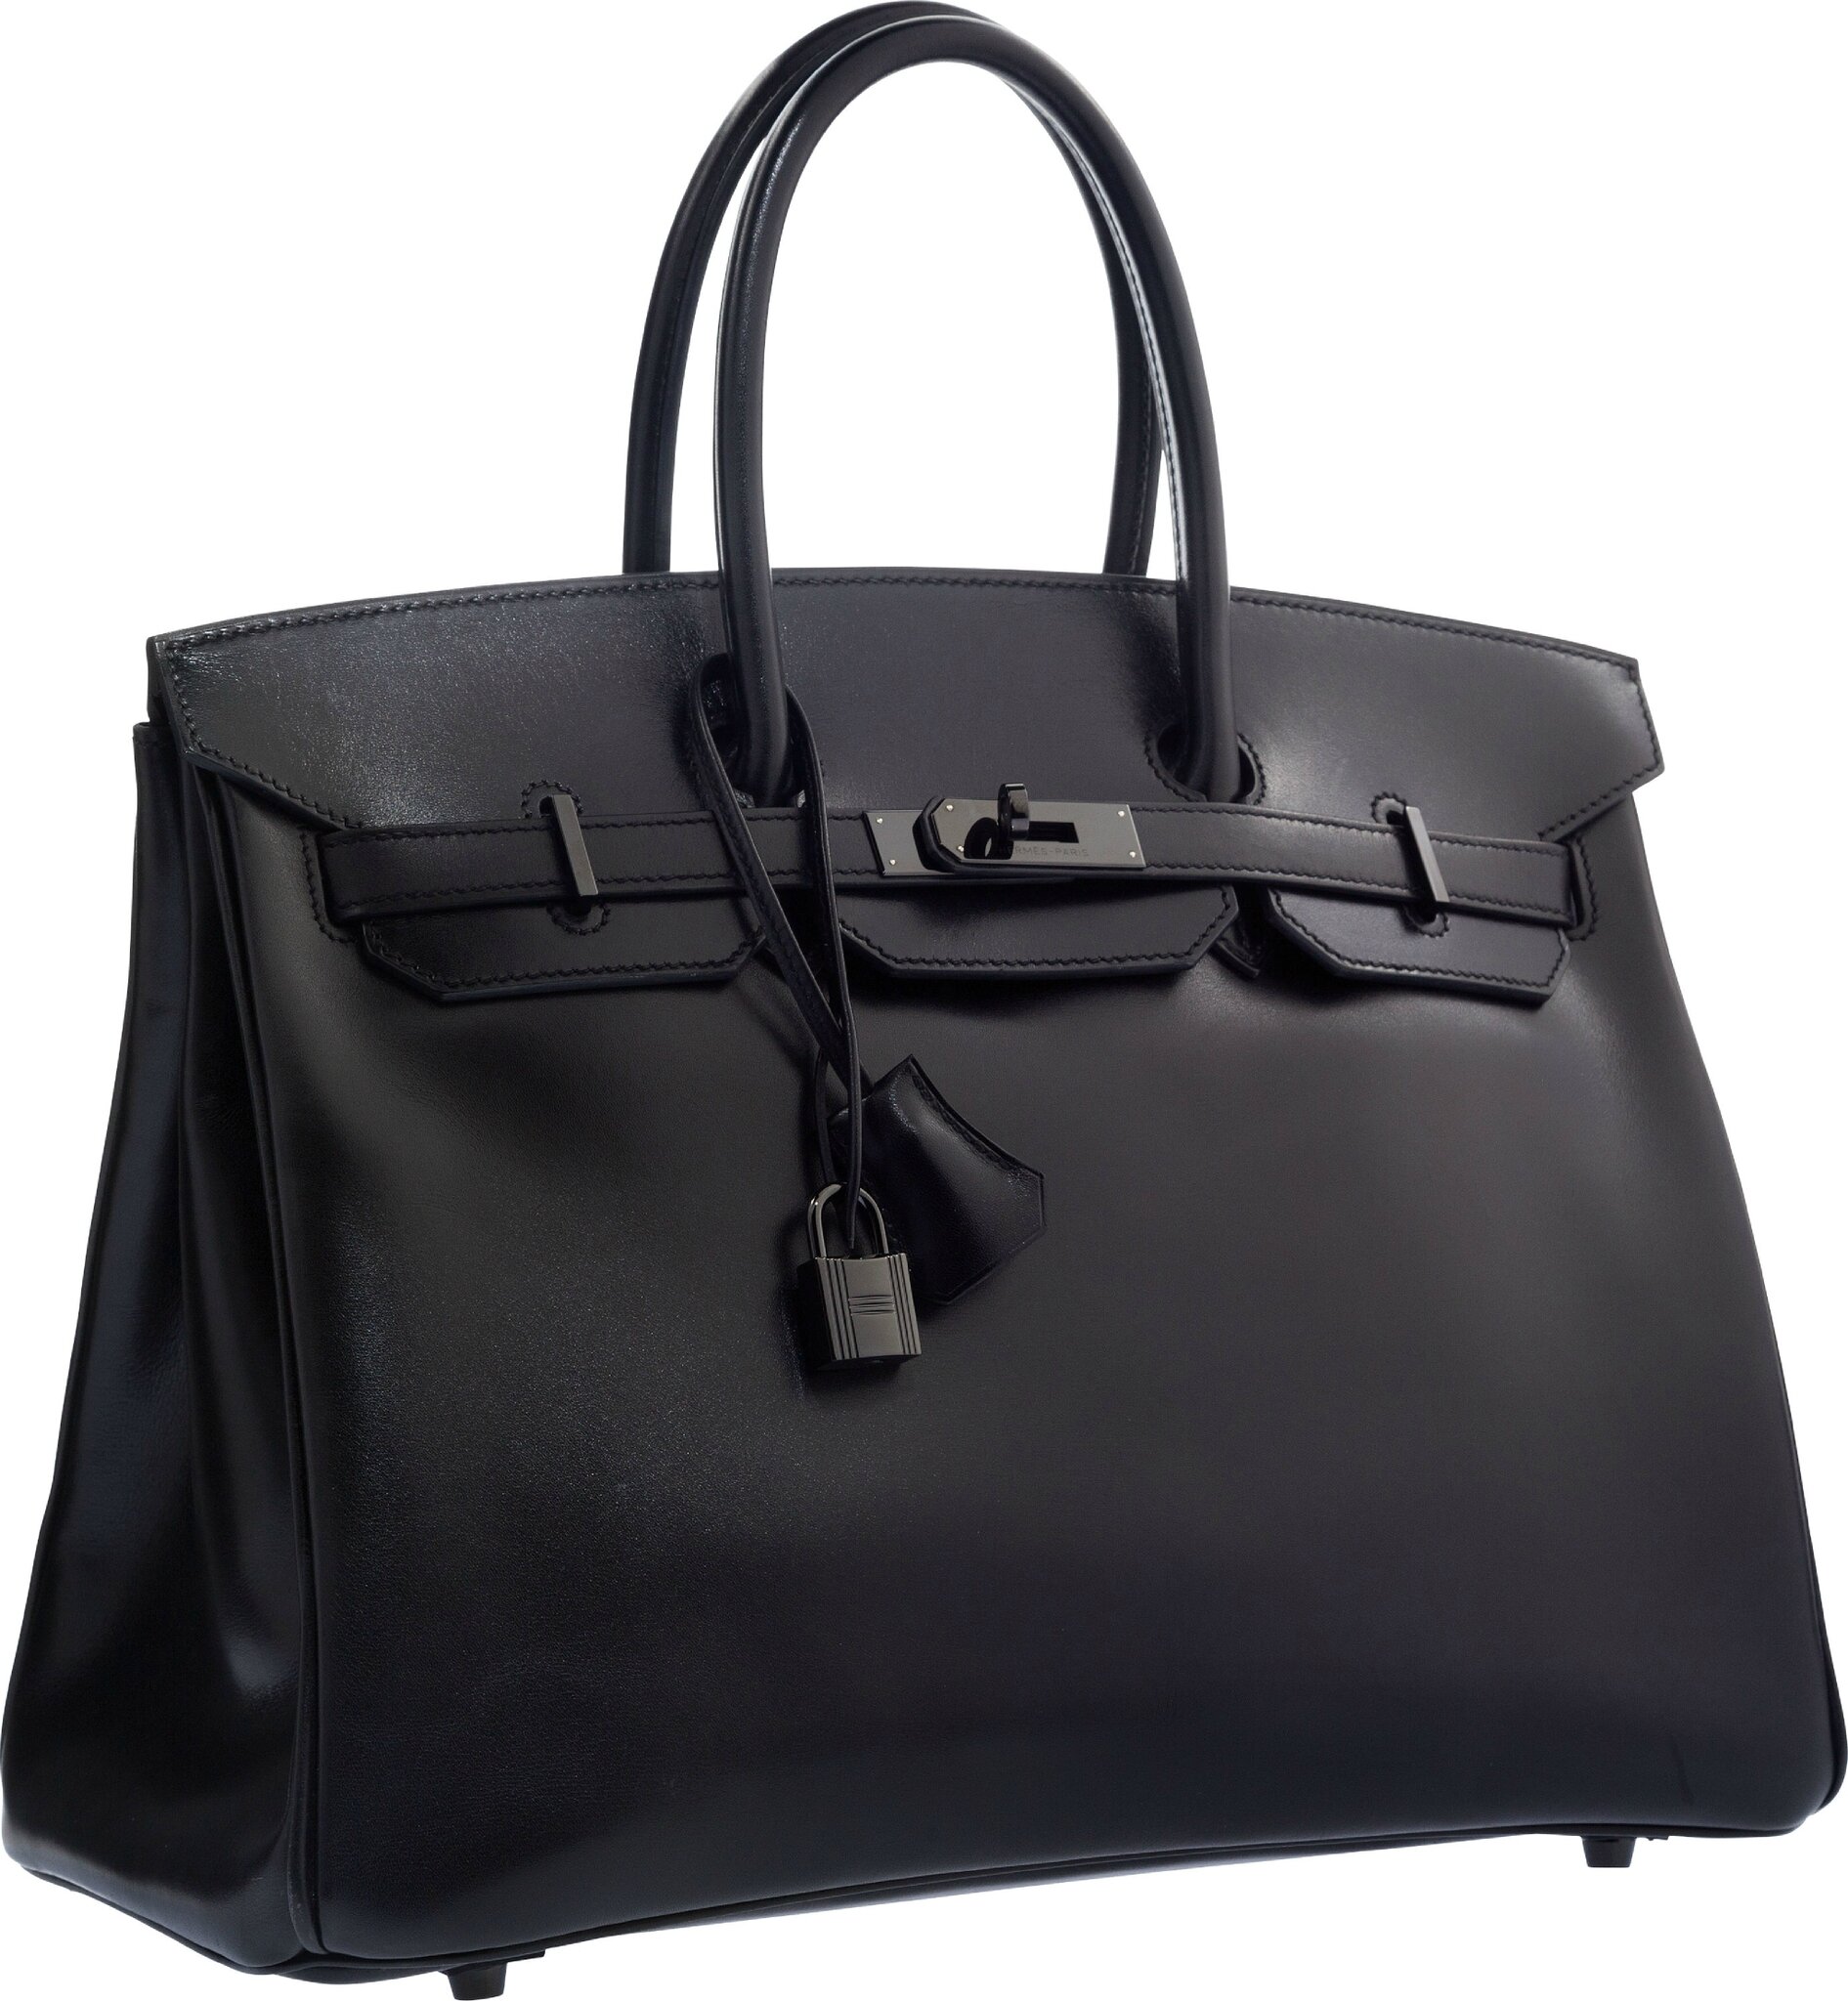 Sold at Auction: Hermes 35cm Tri-Color Togo Leather Birkin Bag W/Clochette,  Lock/Keys, & Dust Bag